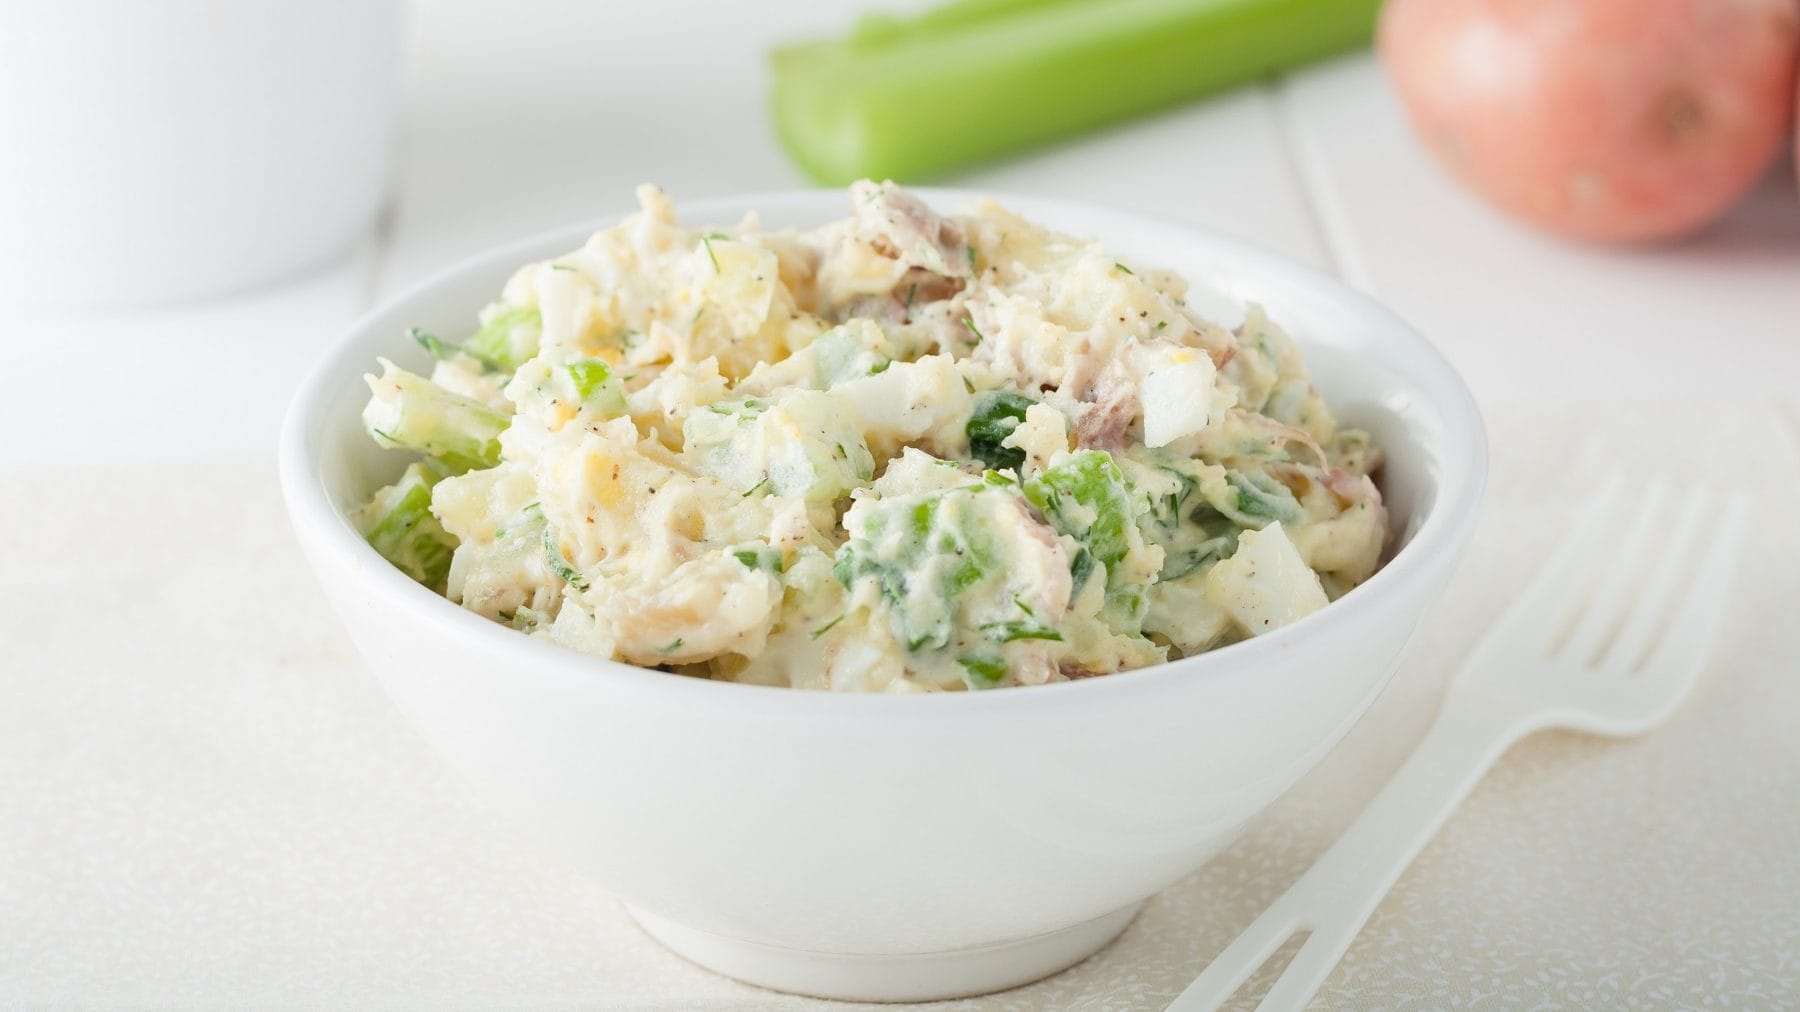 In einer weißen Schale ist ein Sellerie-Kartoffel-Salat. Daneben liegen eine weiße Gabel, eine Kartoffel und eine Sellerie-Stange.